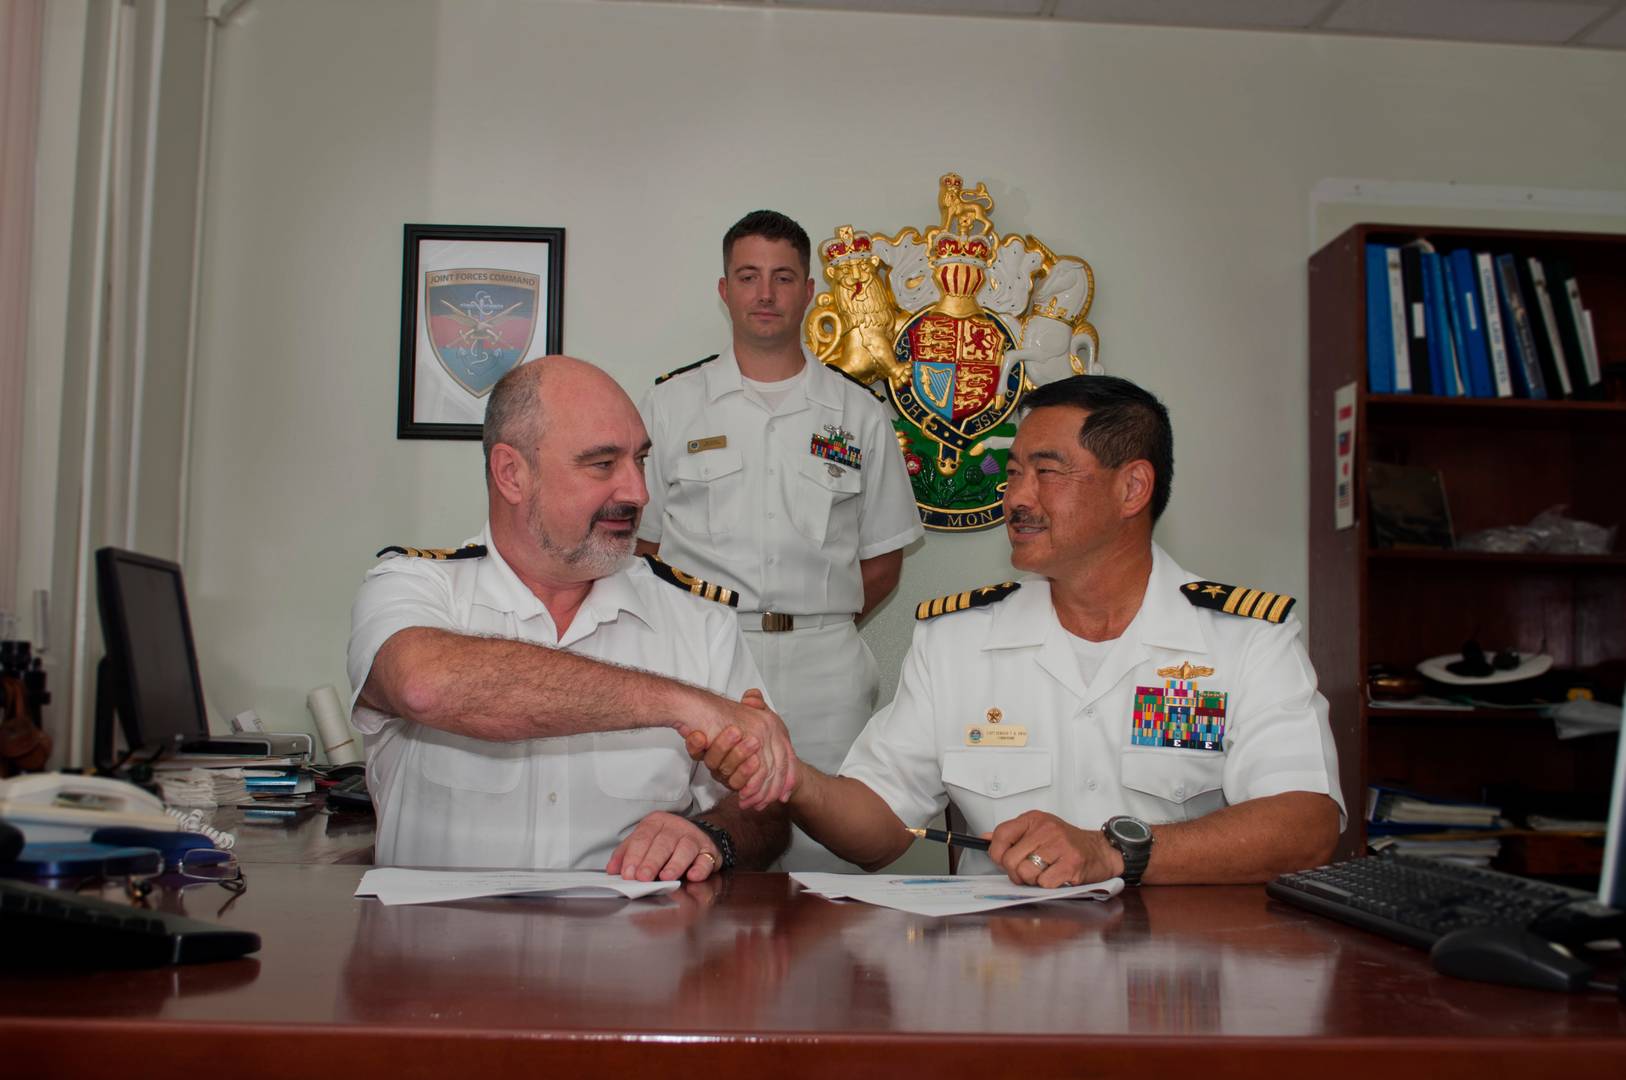 Представитель ВМС Великобритании на базе Диего-Гарсия жмет руку американскому морскому офицеру после подписания соглашения о совместном владении островами Чагос